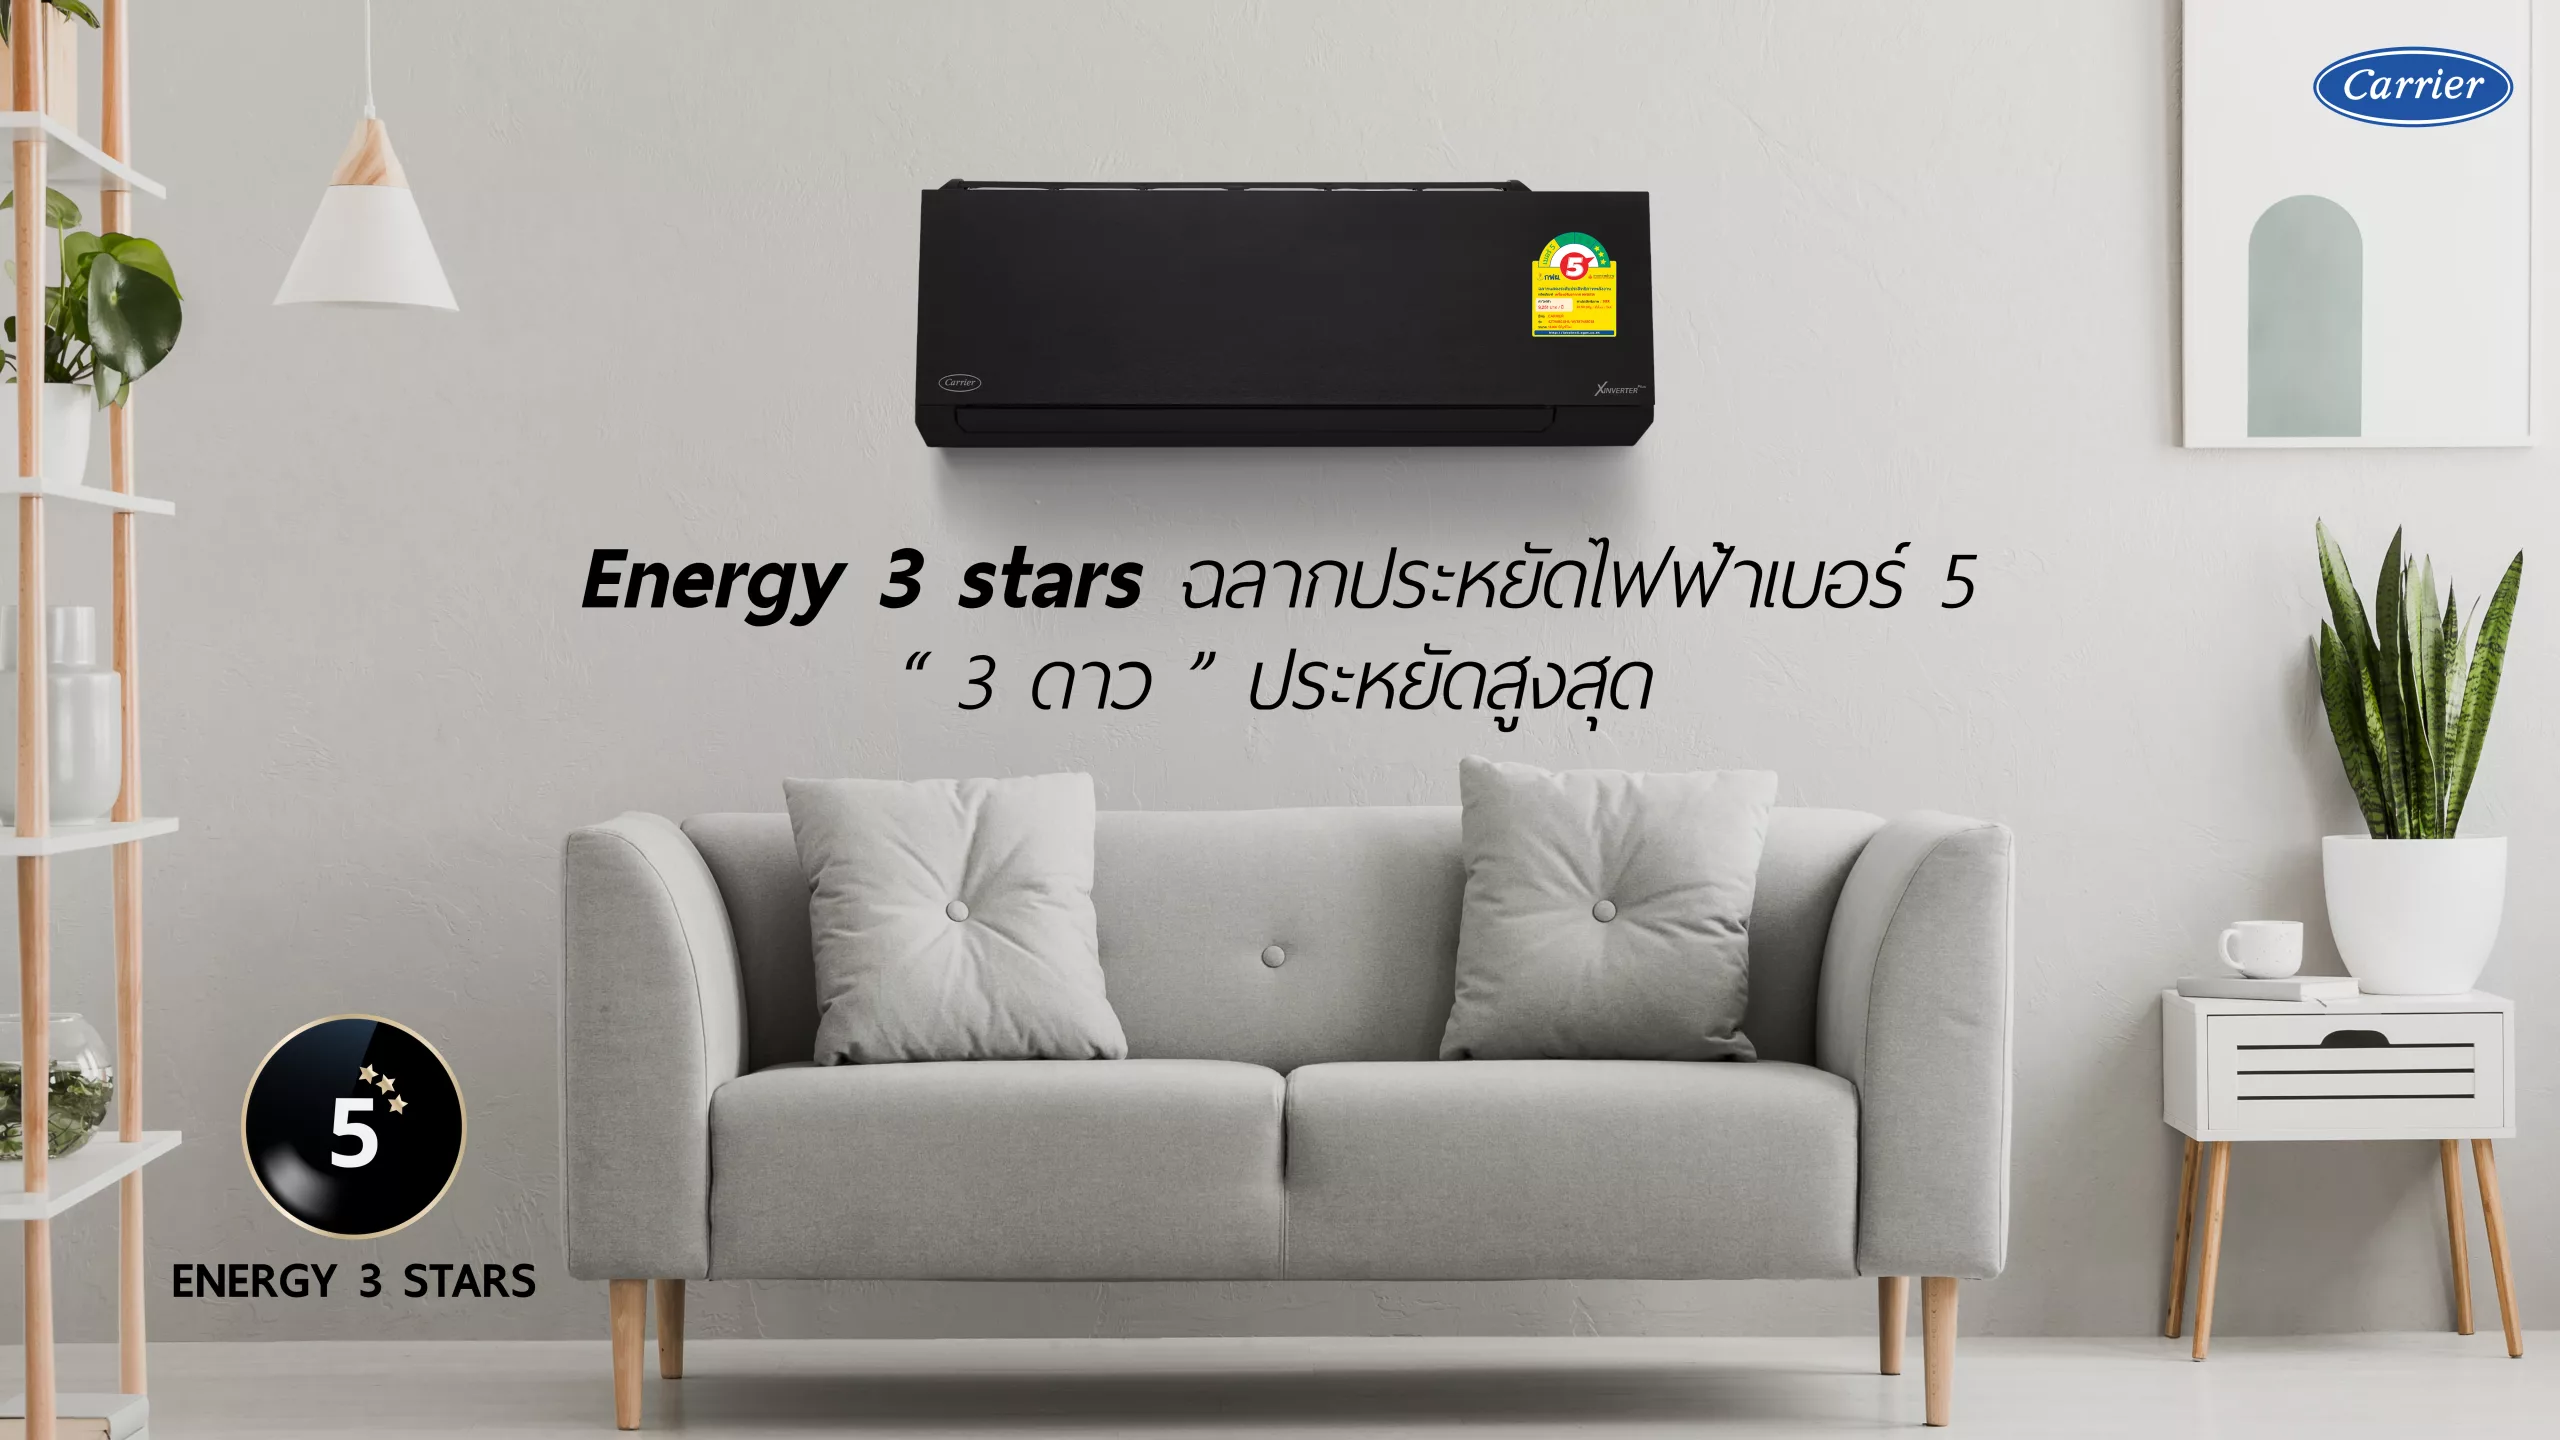 ENERGY 3 STARS ประหยัดไฟฟ้าสูงสุด ต้องการันตีด้วยฉลากเบอร์ 5 "3 ดาว"